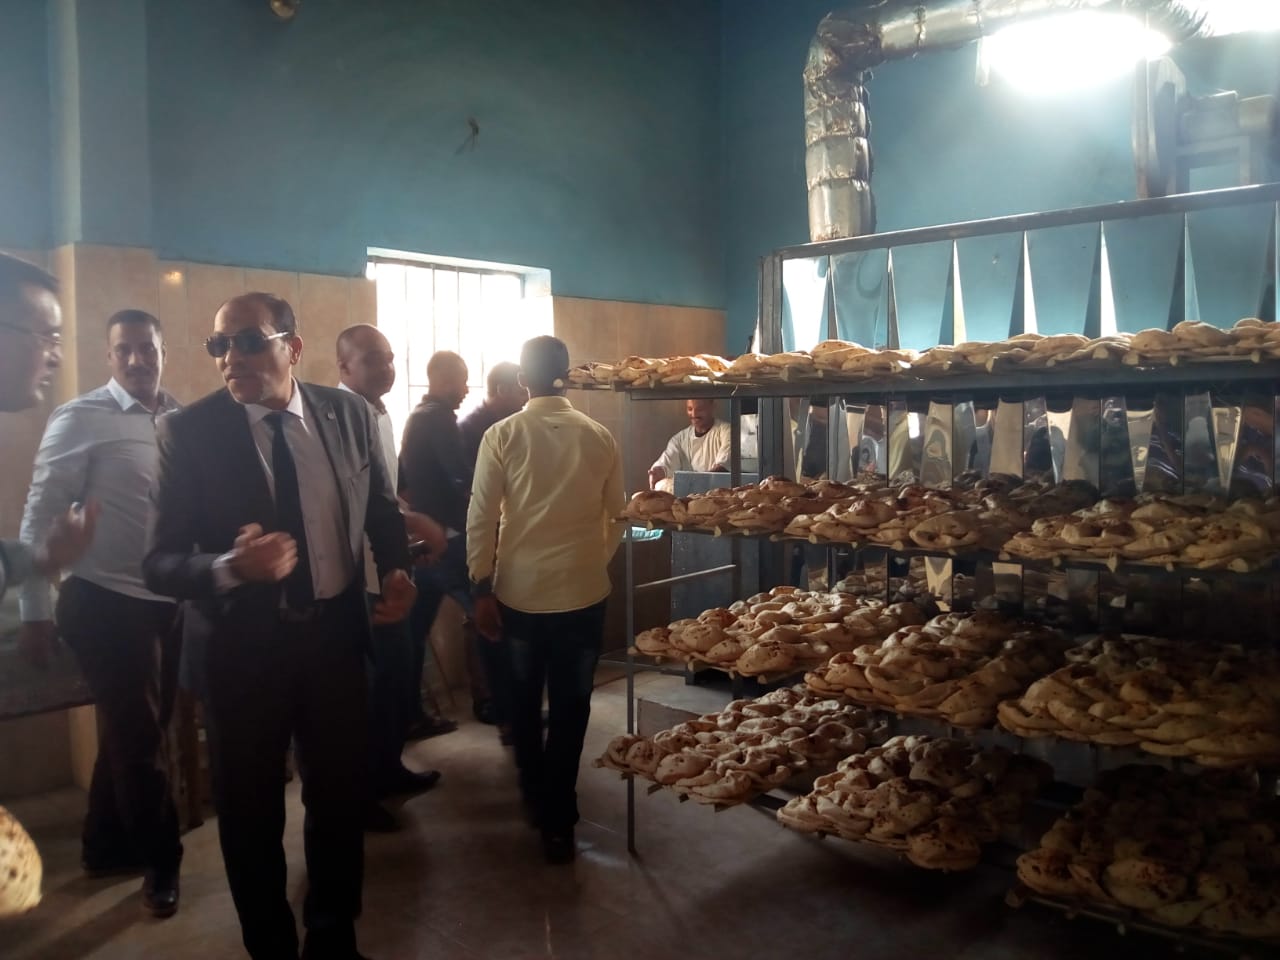 وكيل تموين الأقصر يفتتح مخبز النصر بمنطقة الزناقطة لتوفير الخبز المدعم للمواطنين (3)